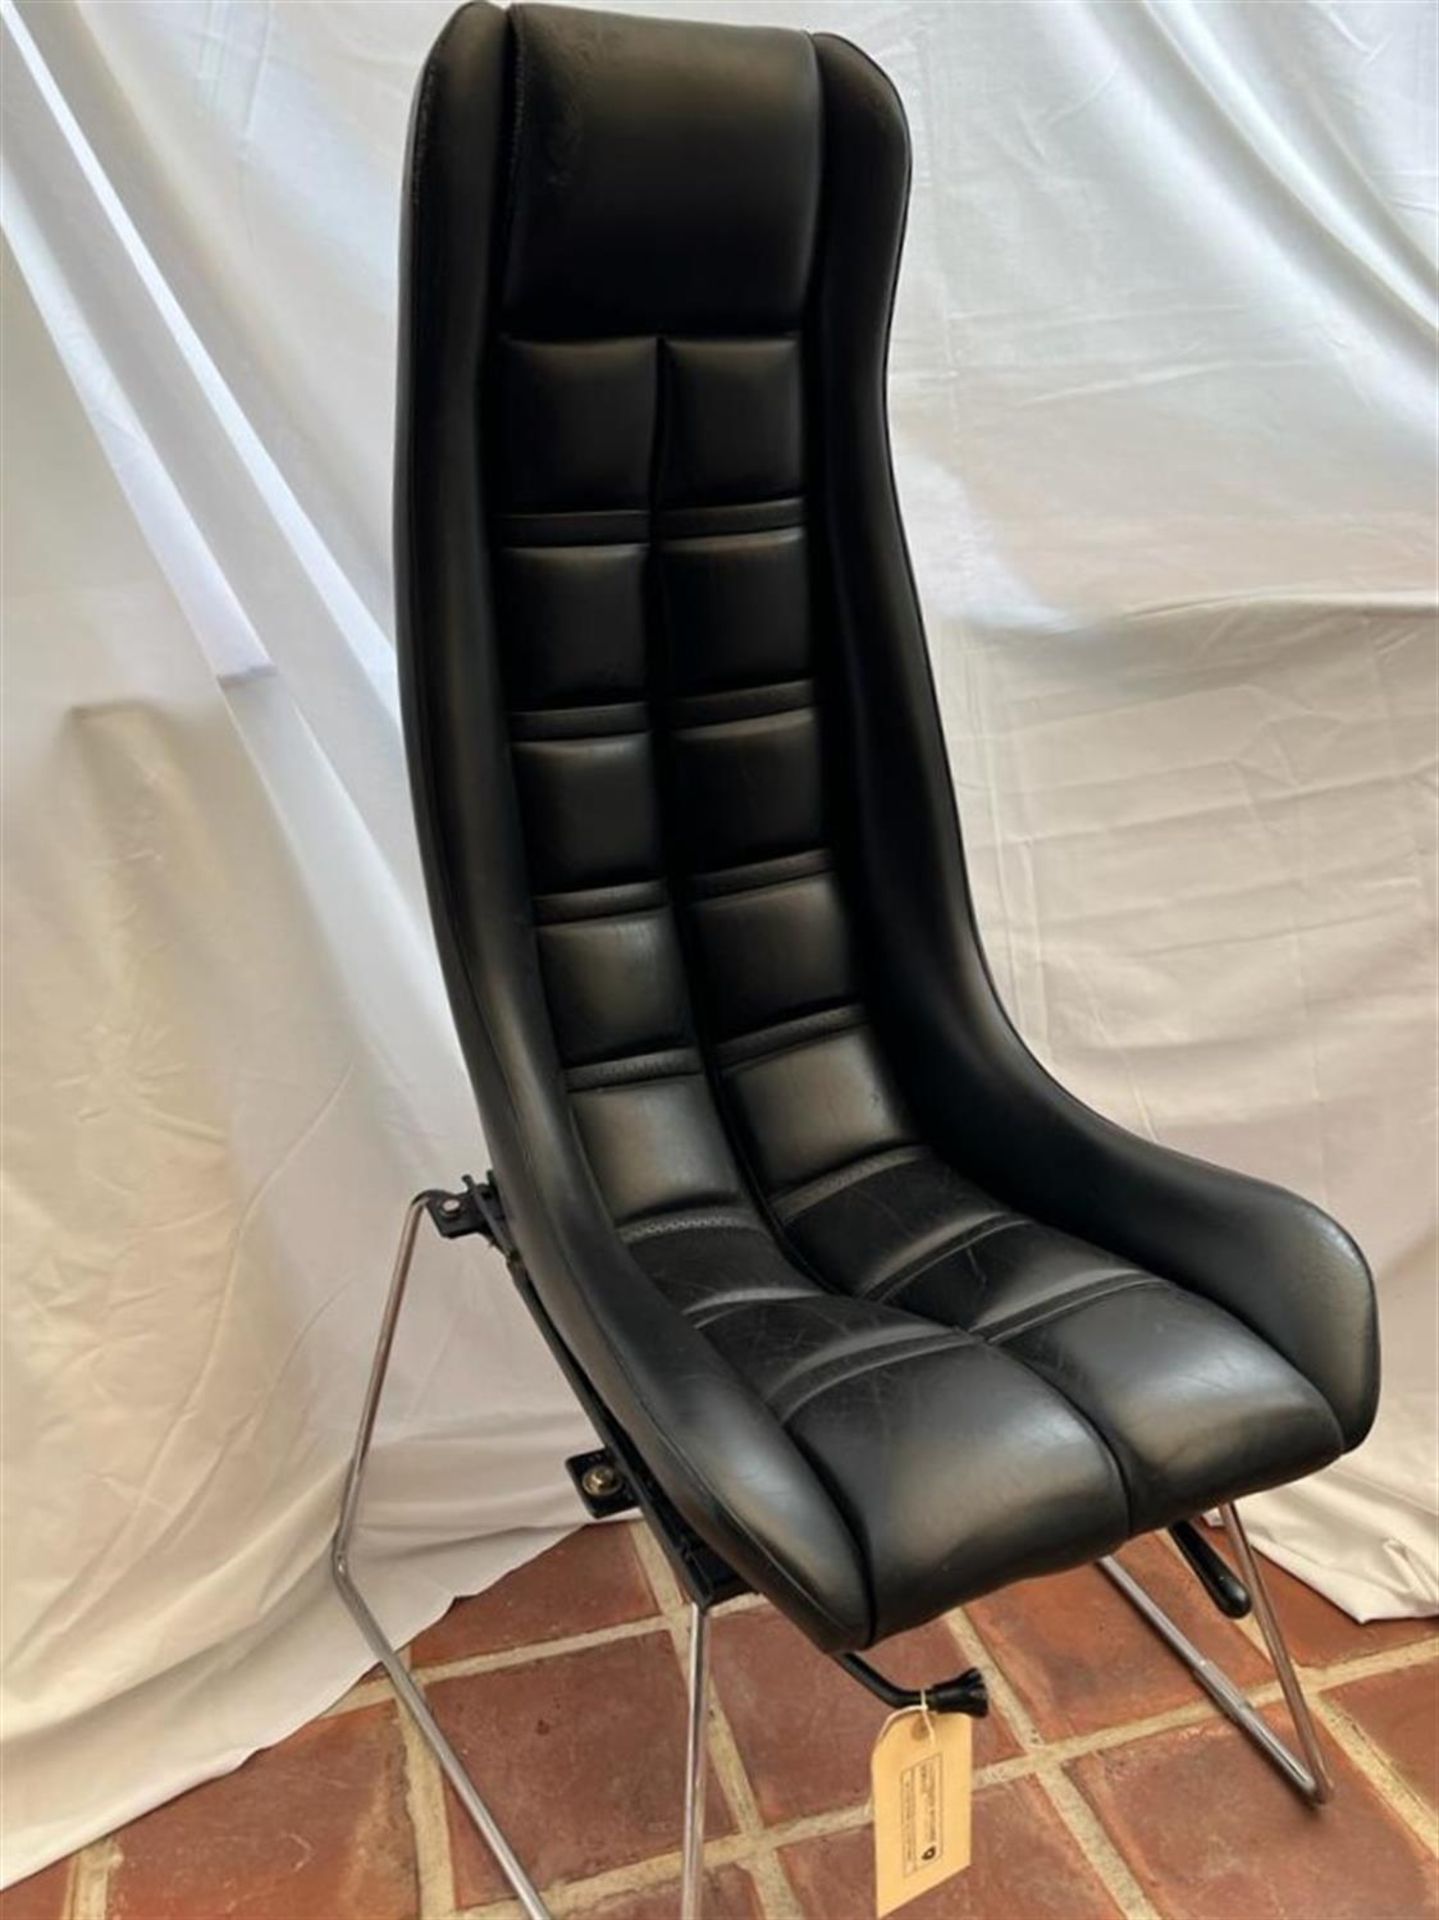 Stylish Black Leather Lamborghini Office Seat - Image 2 of 6